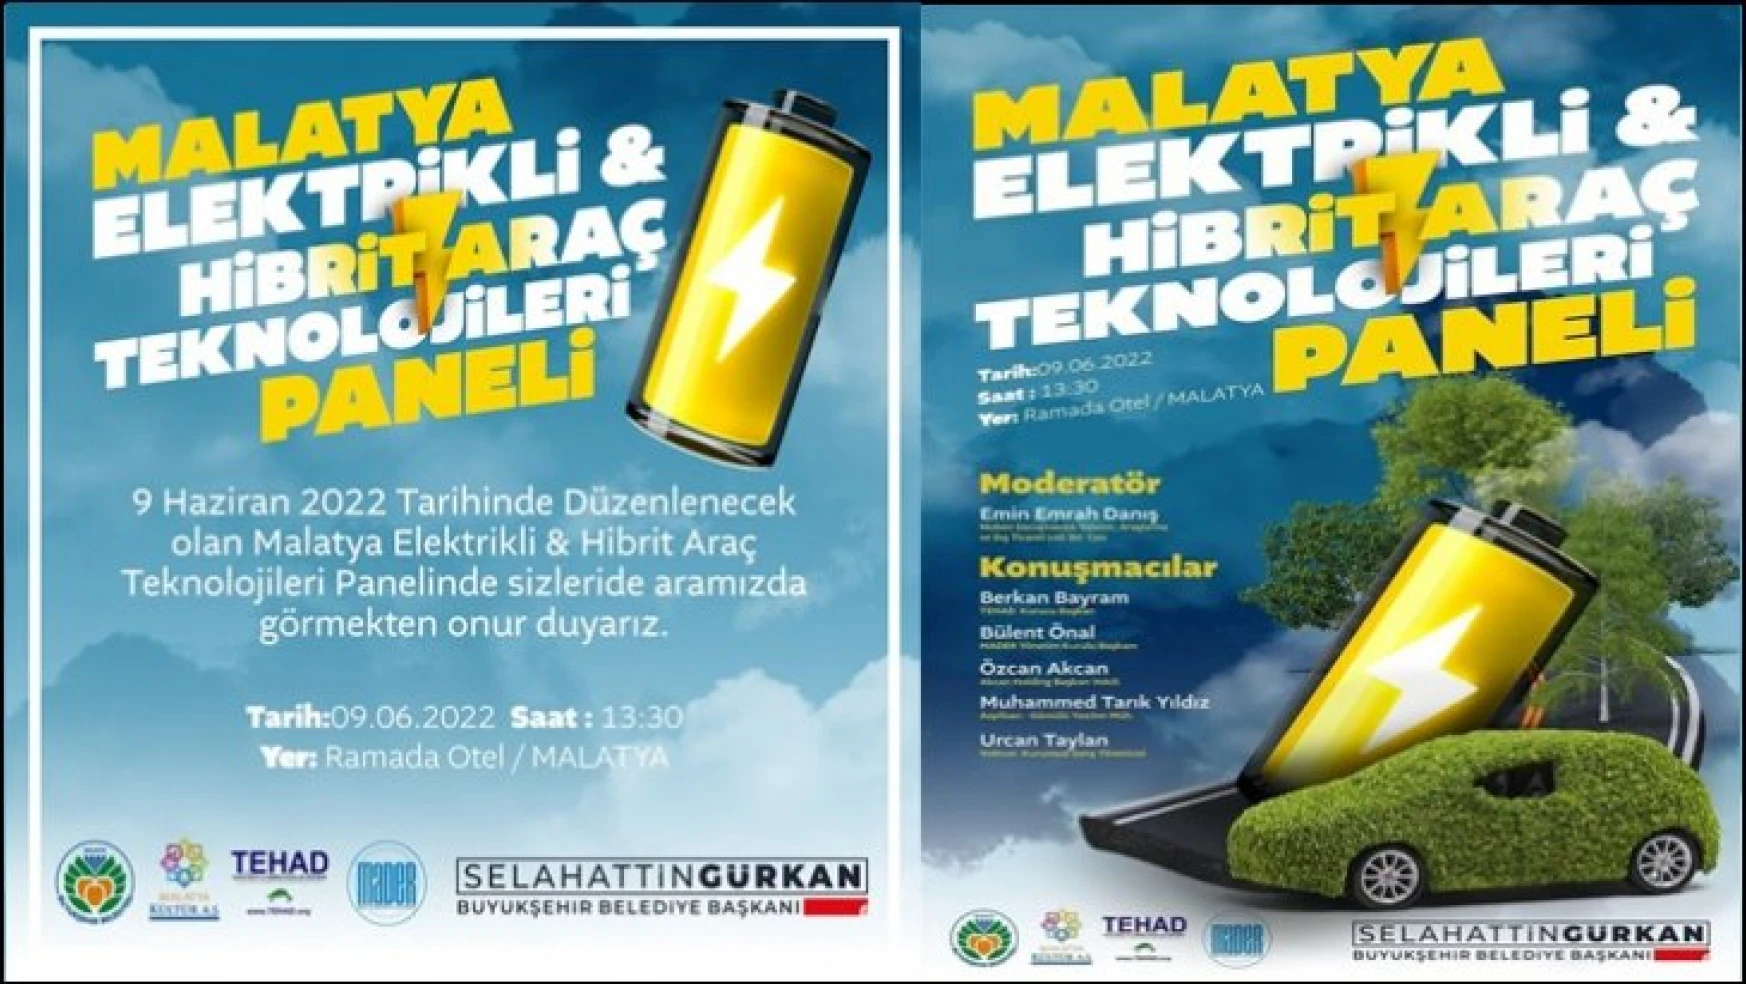 Malatya Büyükşehir Belediyesinden Elektrikli Ve Hibrid Araç Teknolojileri Paneli